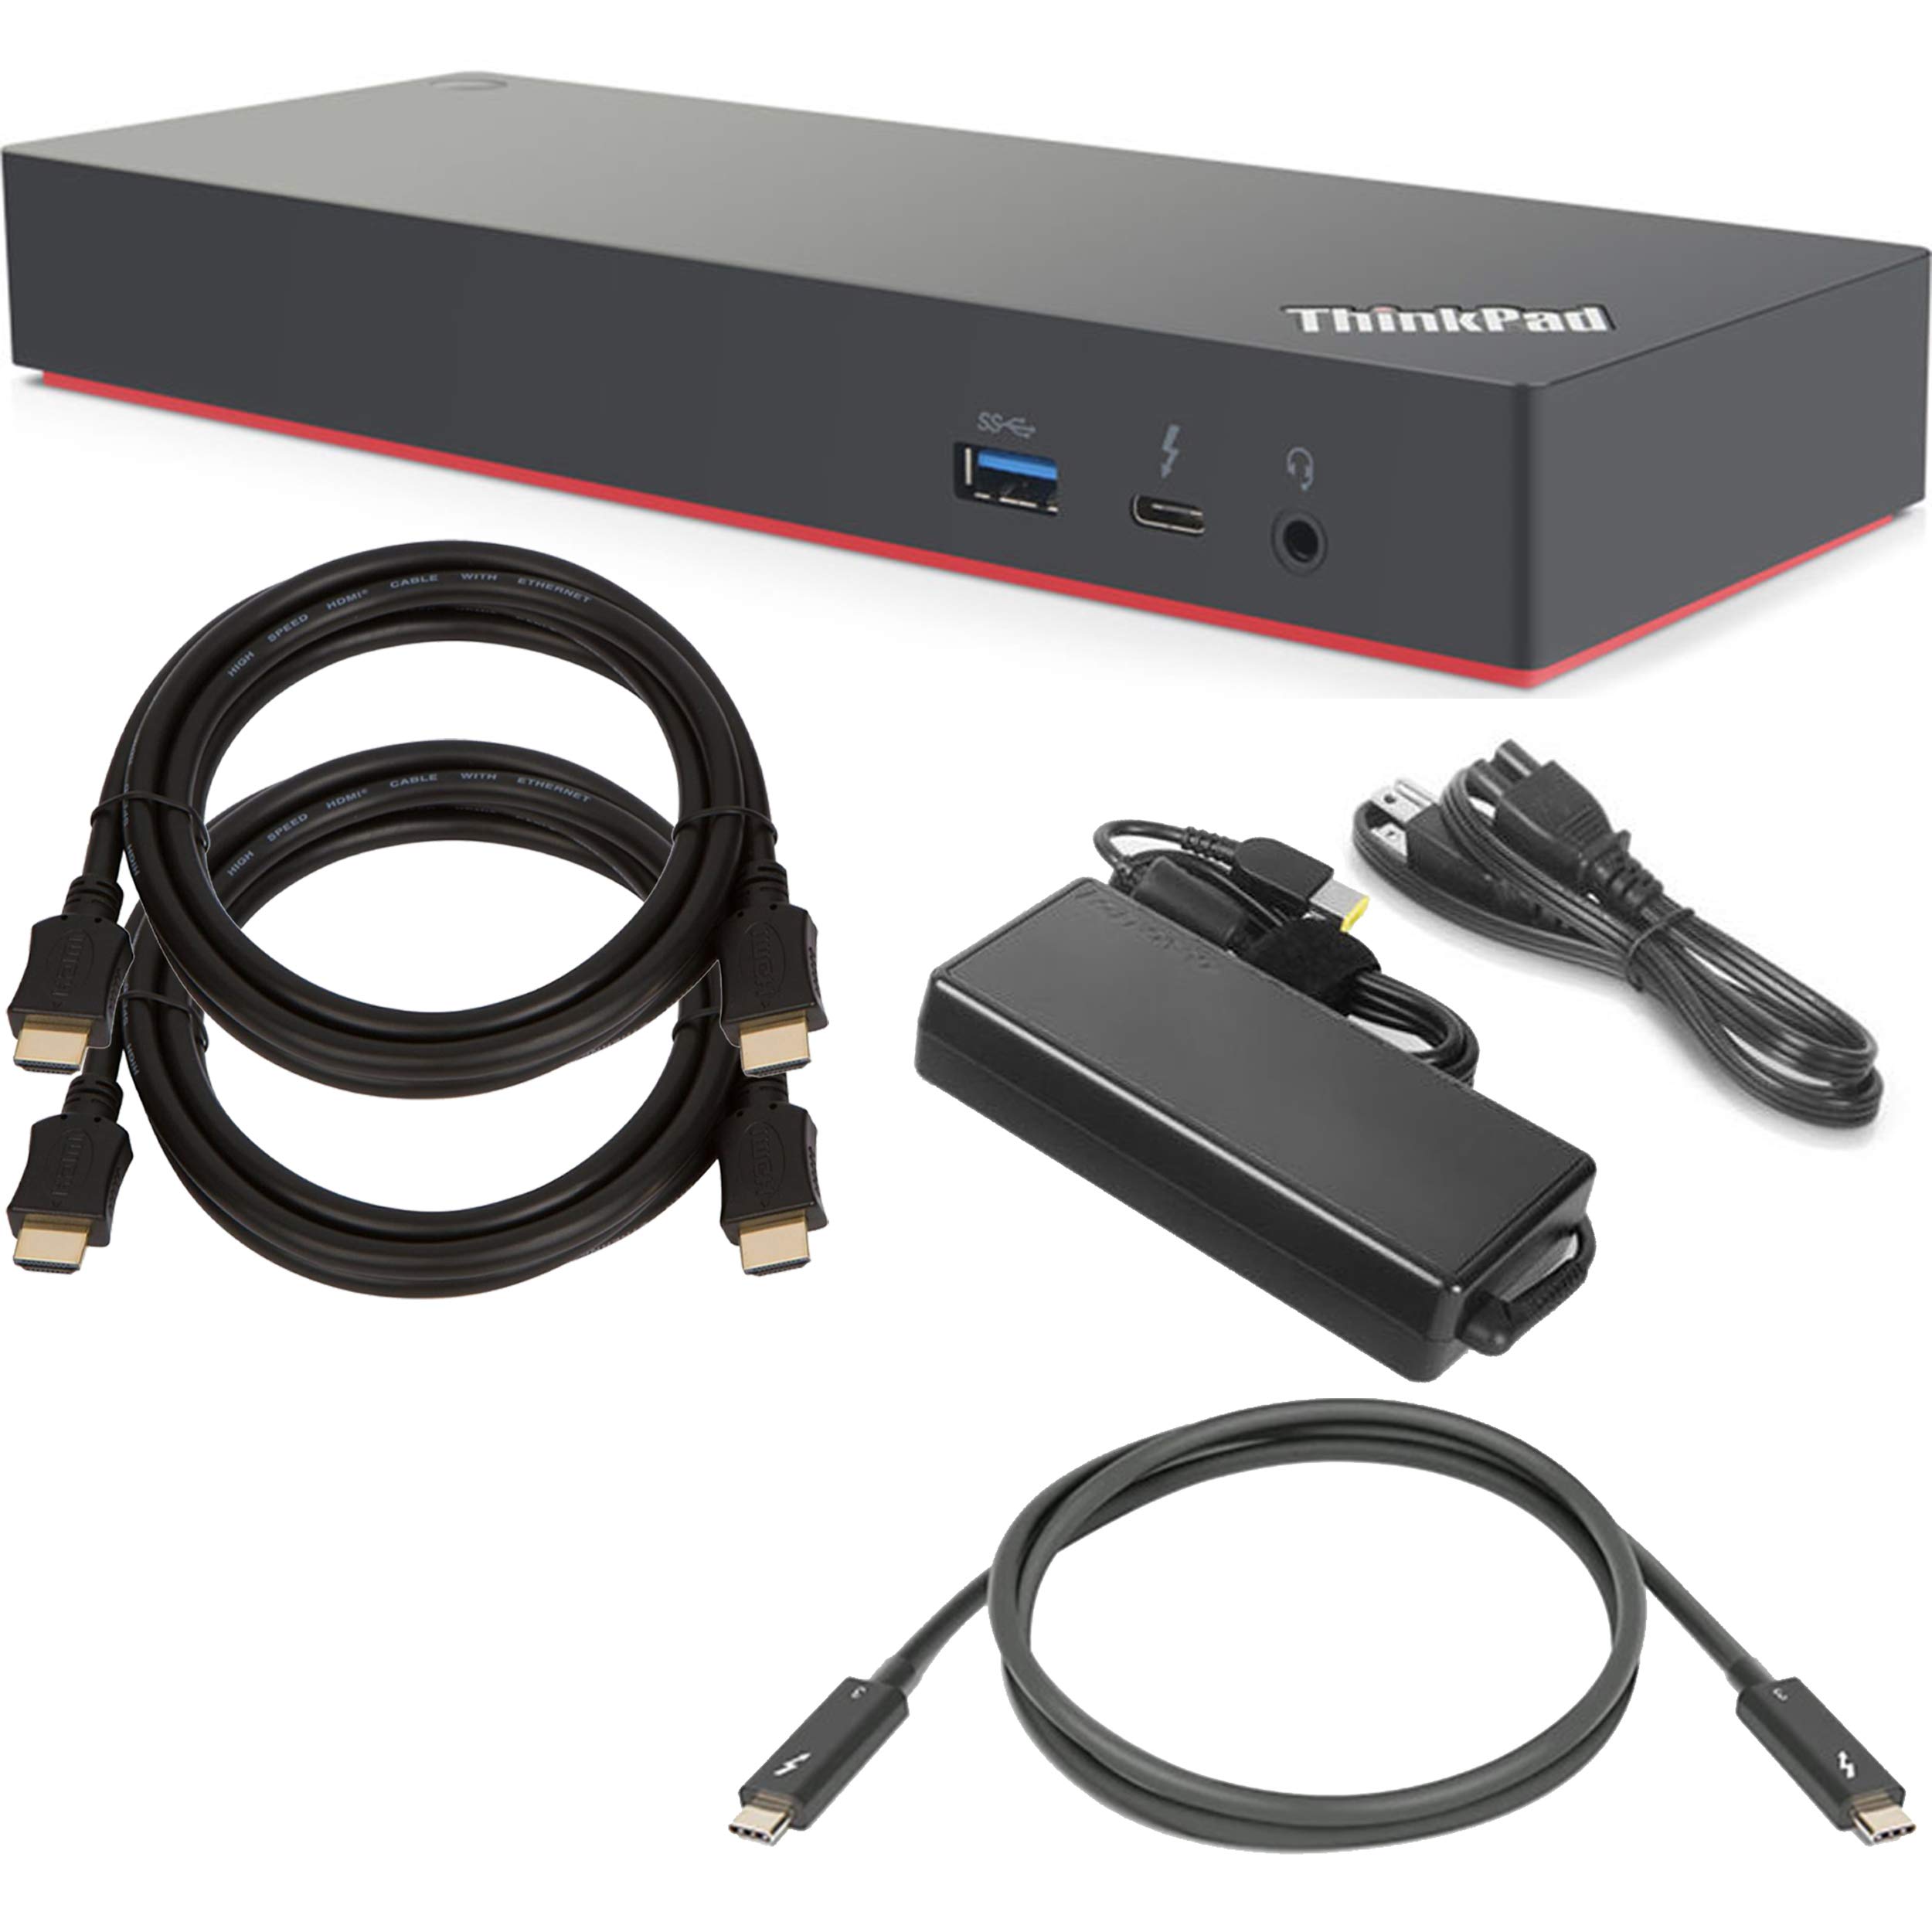 ShopSmart Deals Estación de acoplamiento Lenovo ThinkPad Thunderbolt 3 Dock Gen 2 (135 W) (40AN0135US) + Paquete básico de SSD